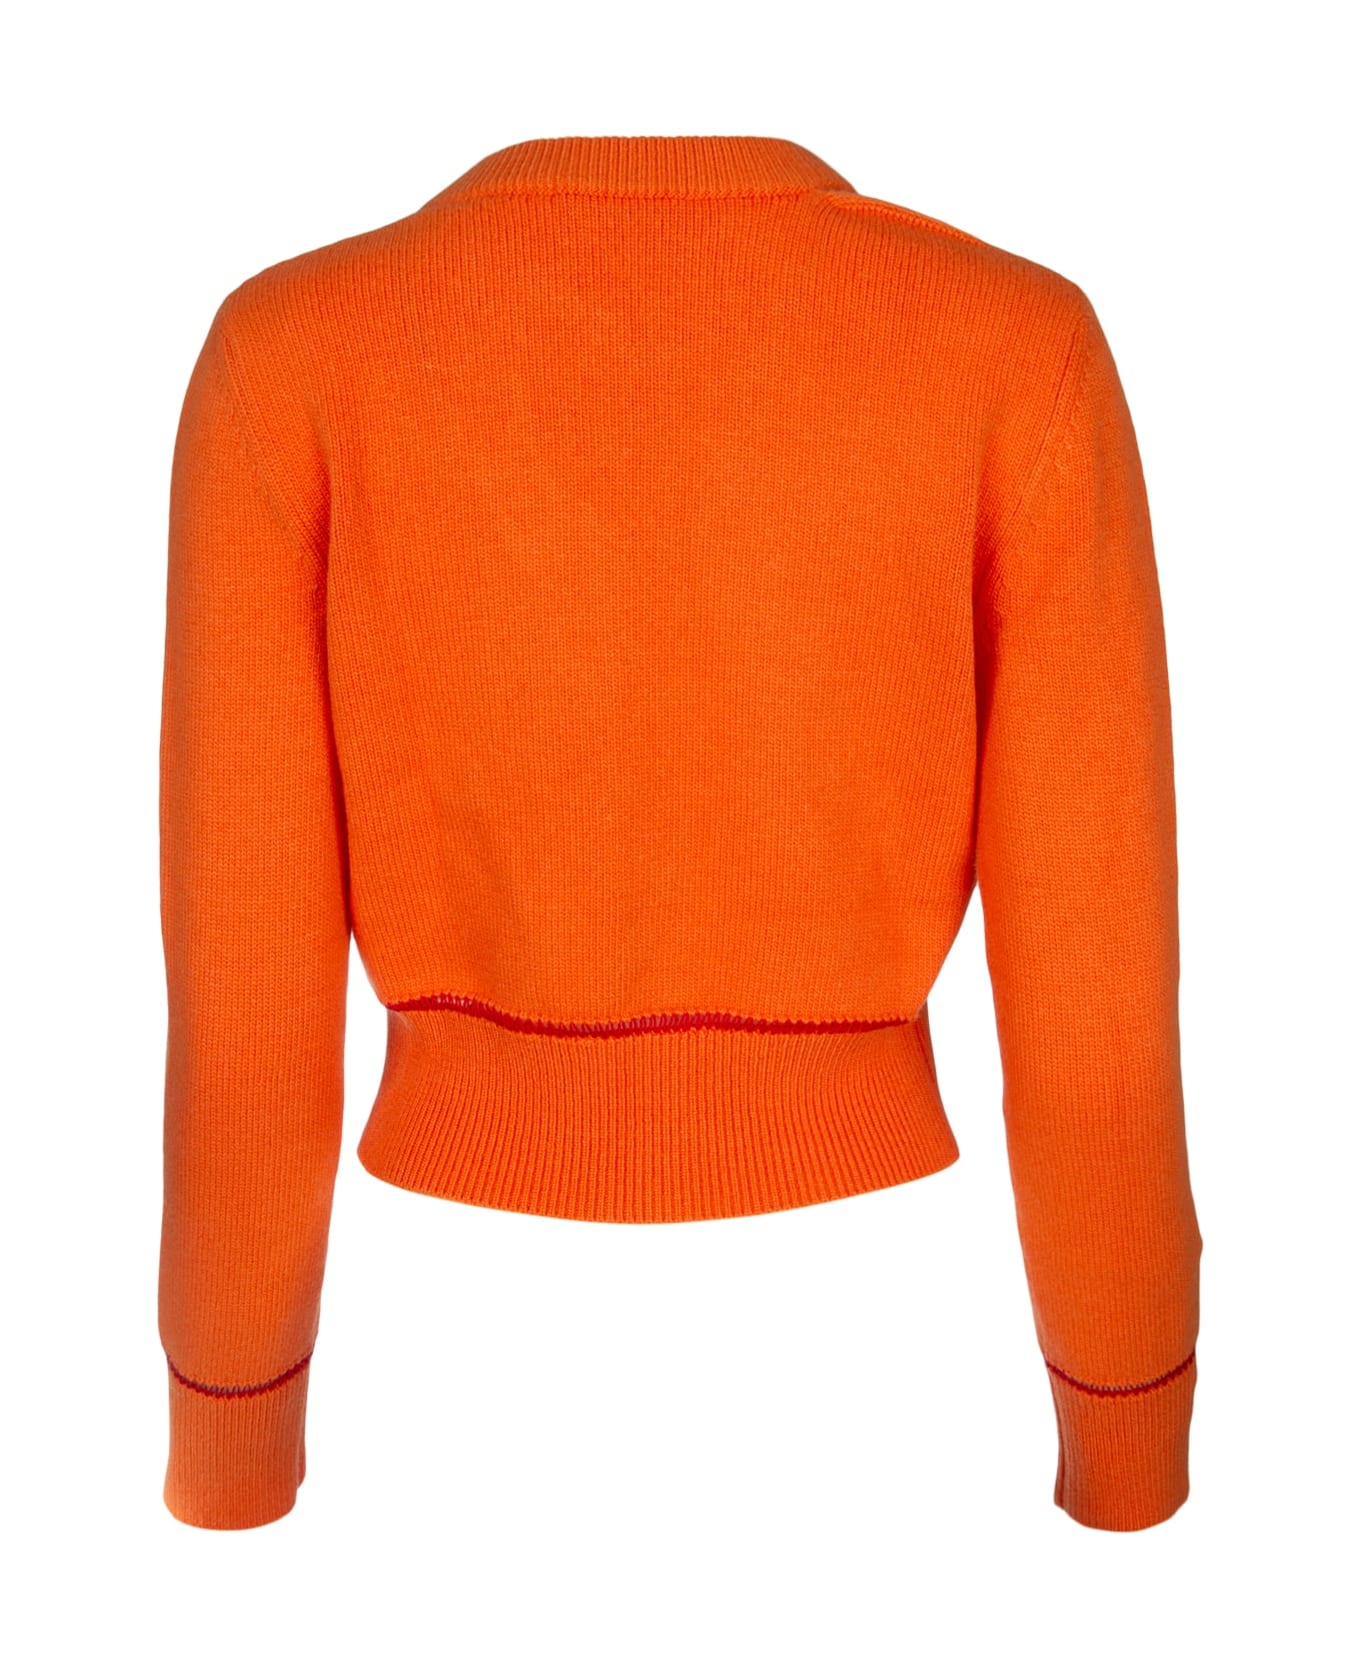 Alexander McQueen Orange Wool Cardigan - 6079 カーディガン